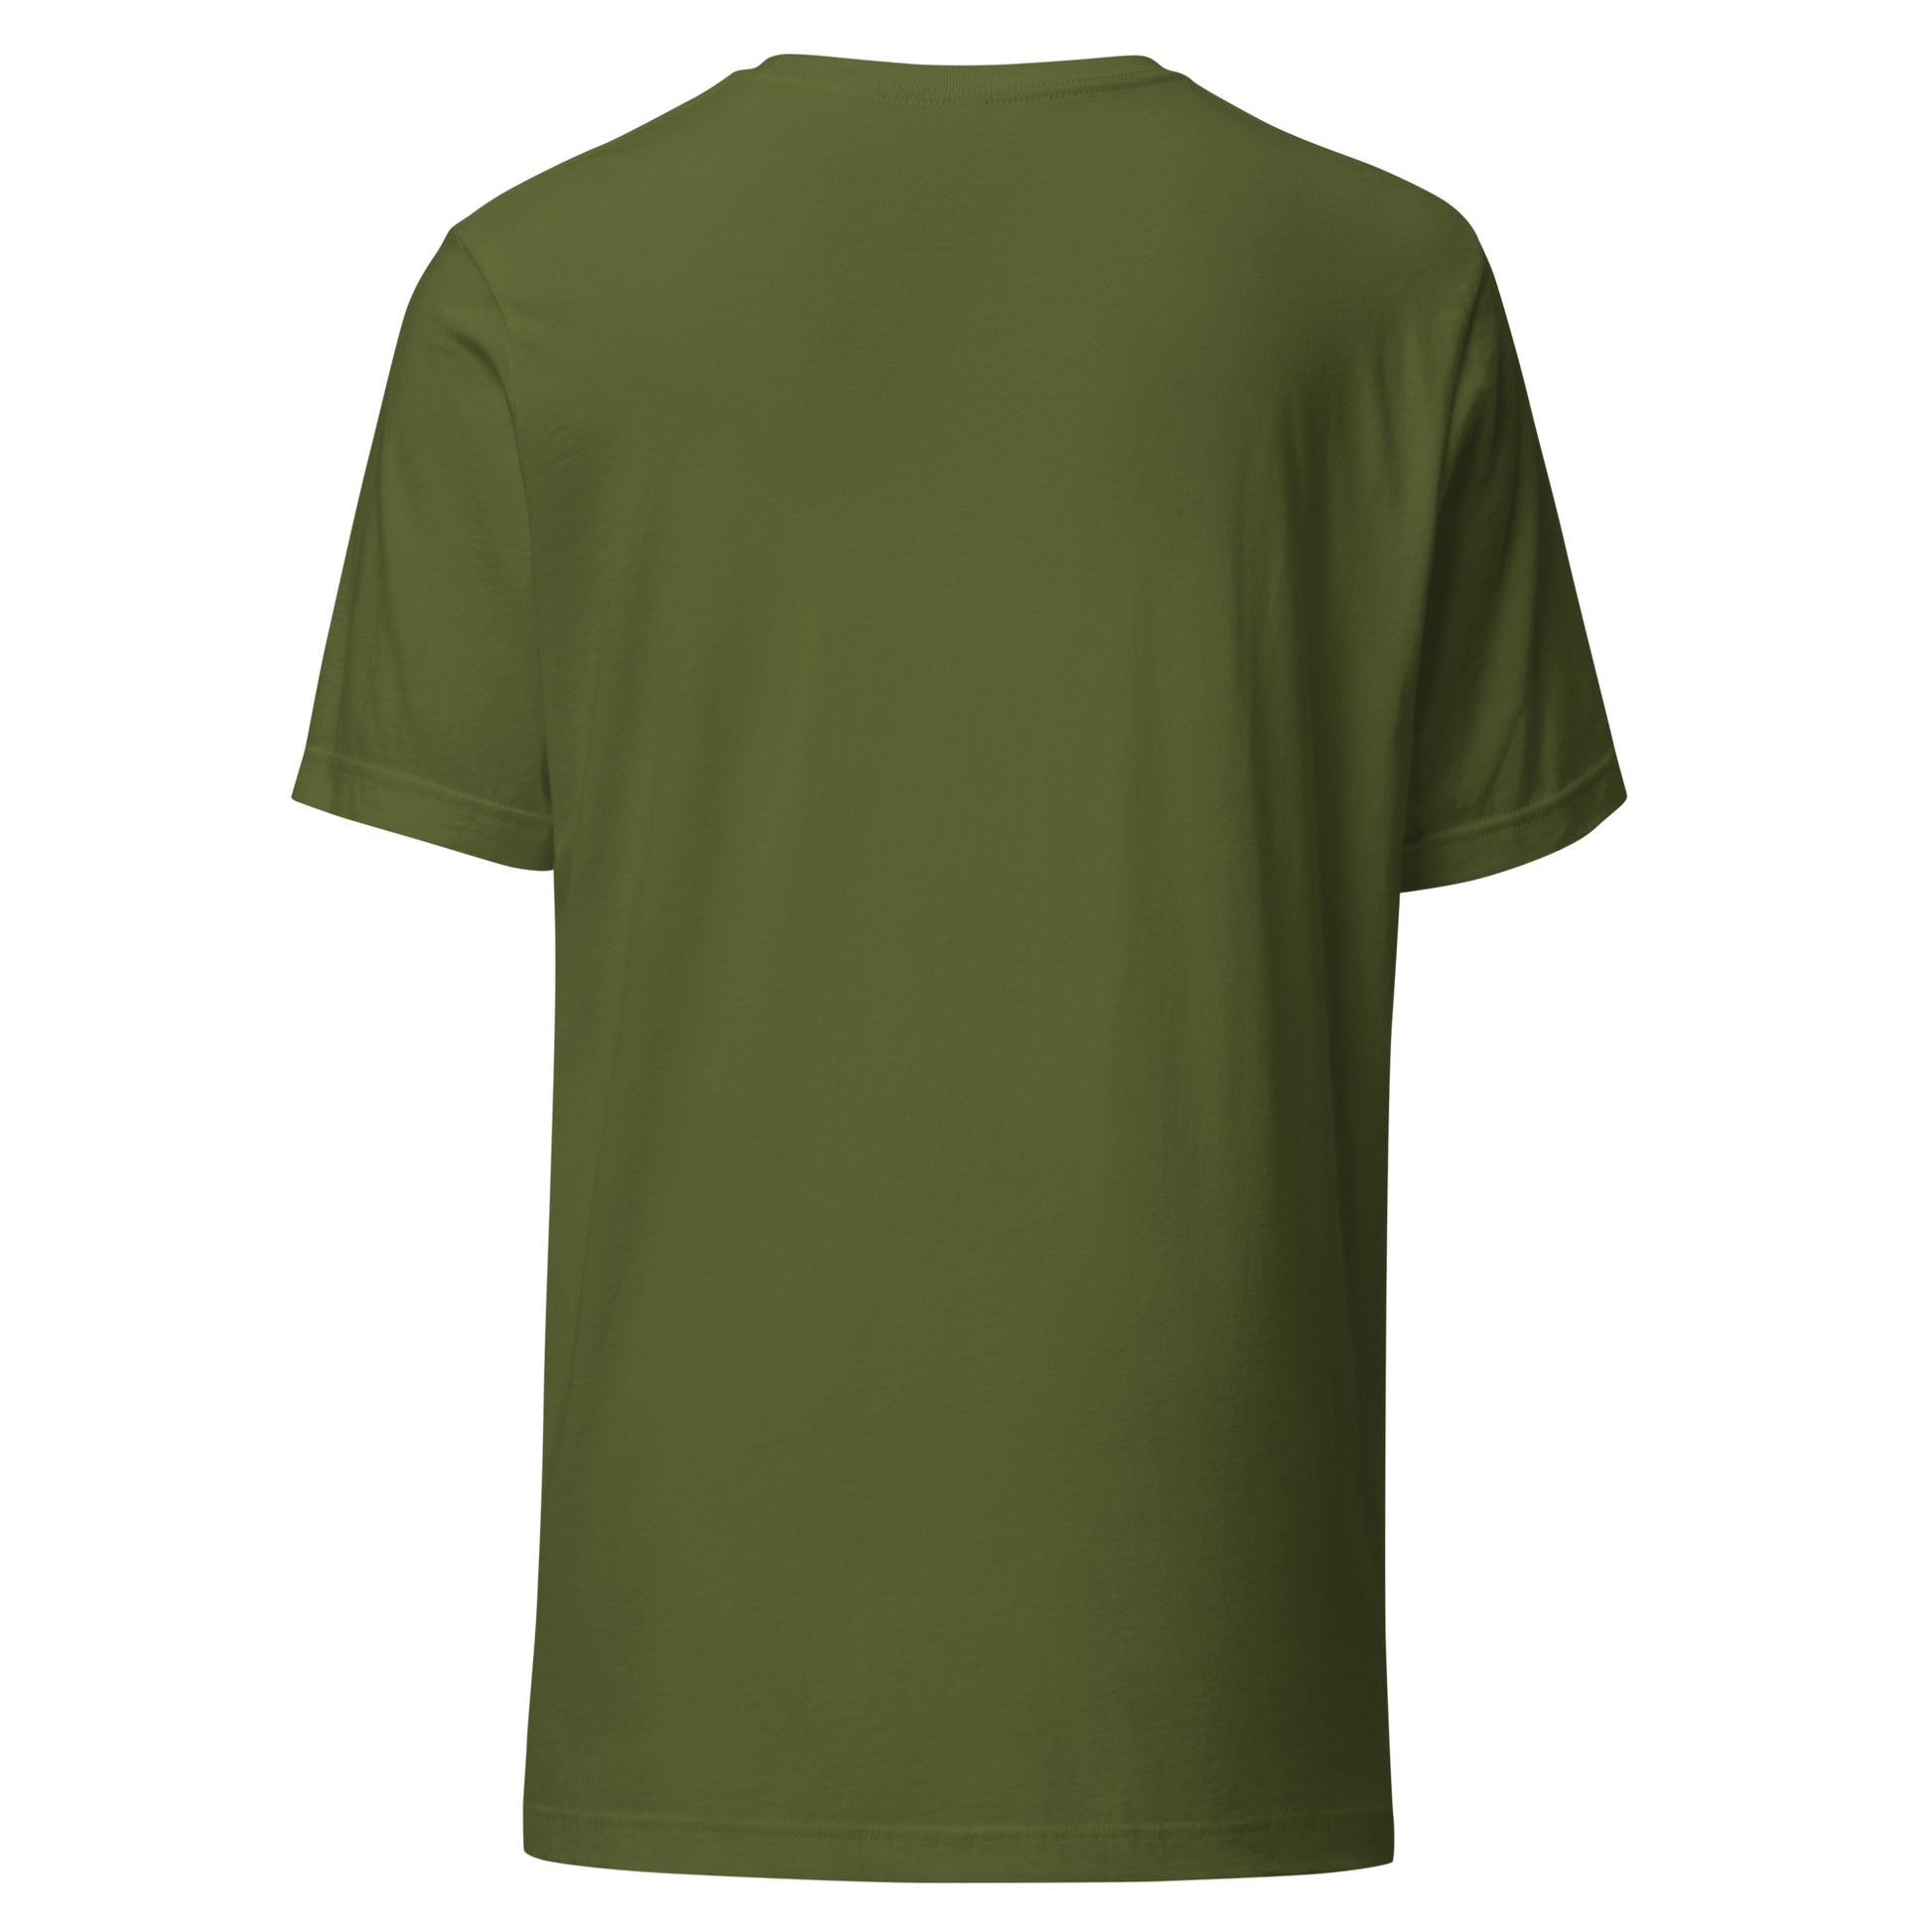 Camiseta Verde Oliva de Algodón - Elegancia y calidad en nuestra insignia. Descubre la perfección del algodón premium importado. Guatemala